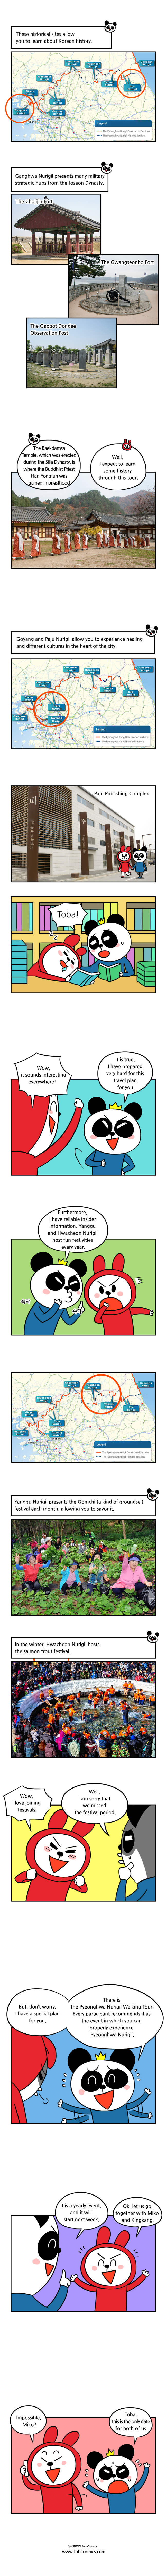 Nurigil Webtoon02